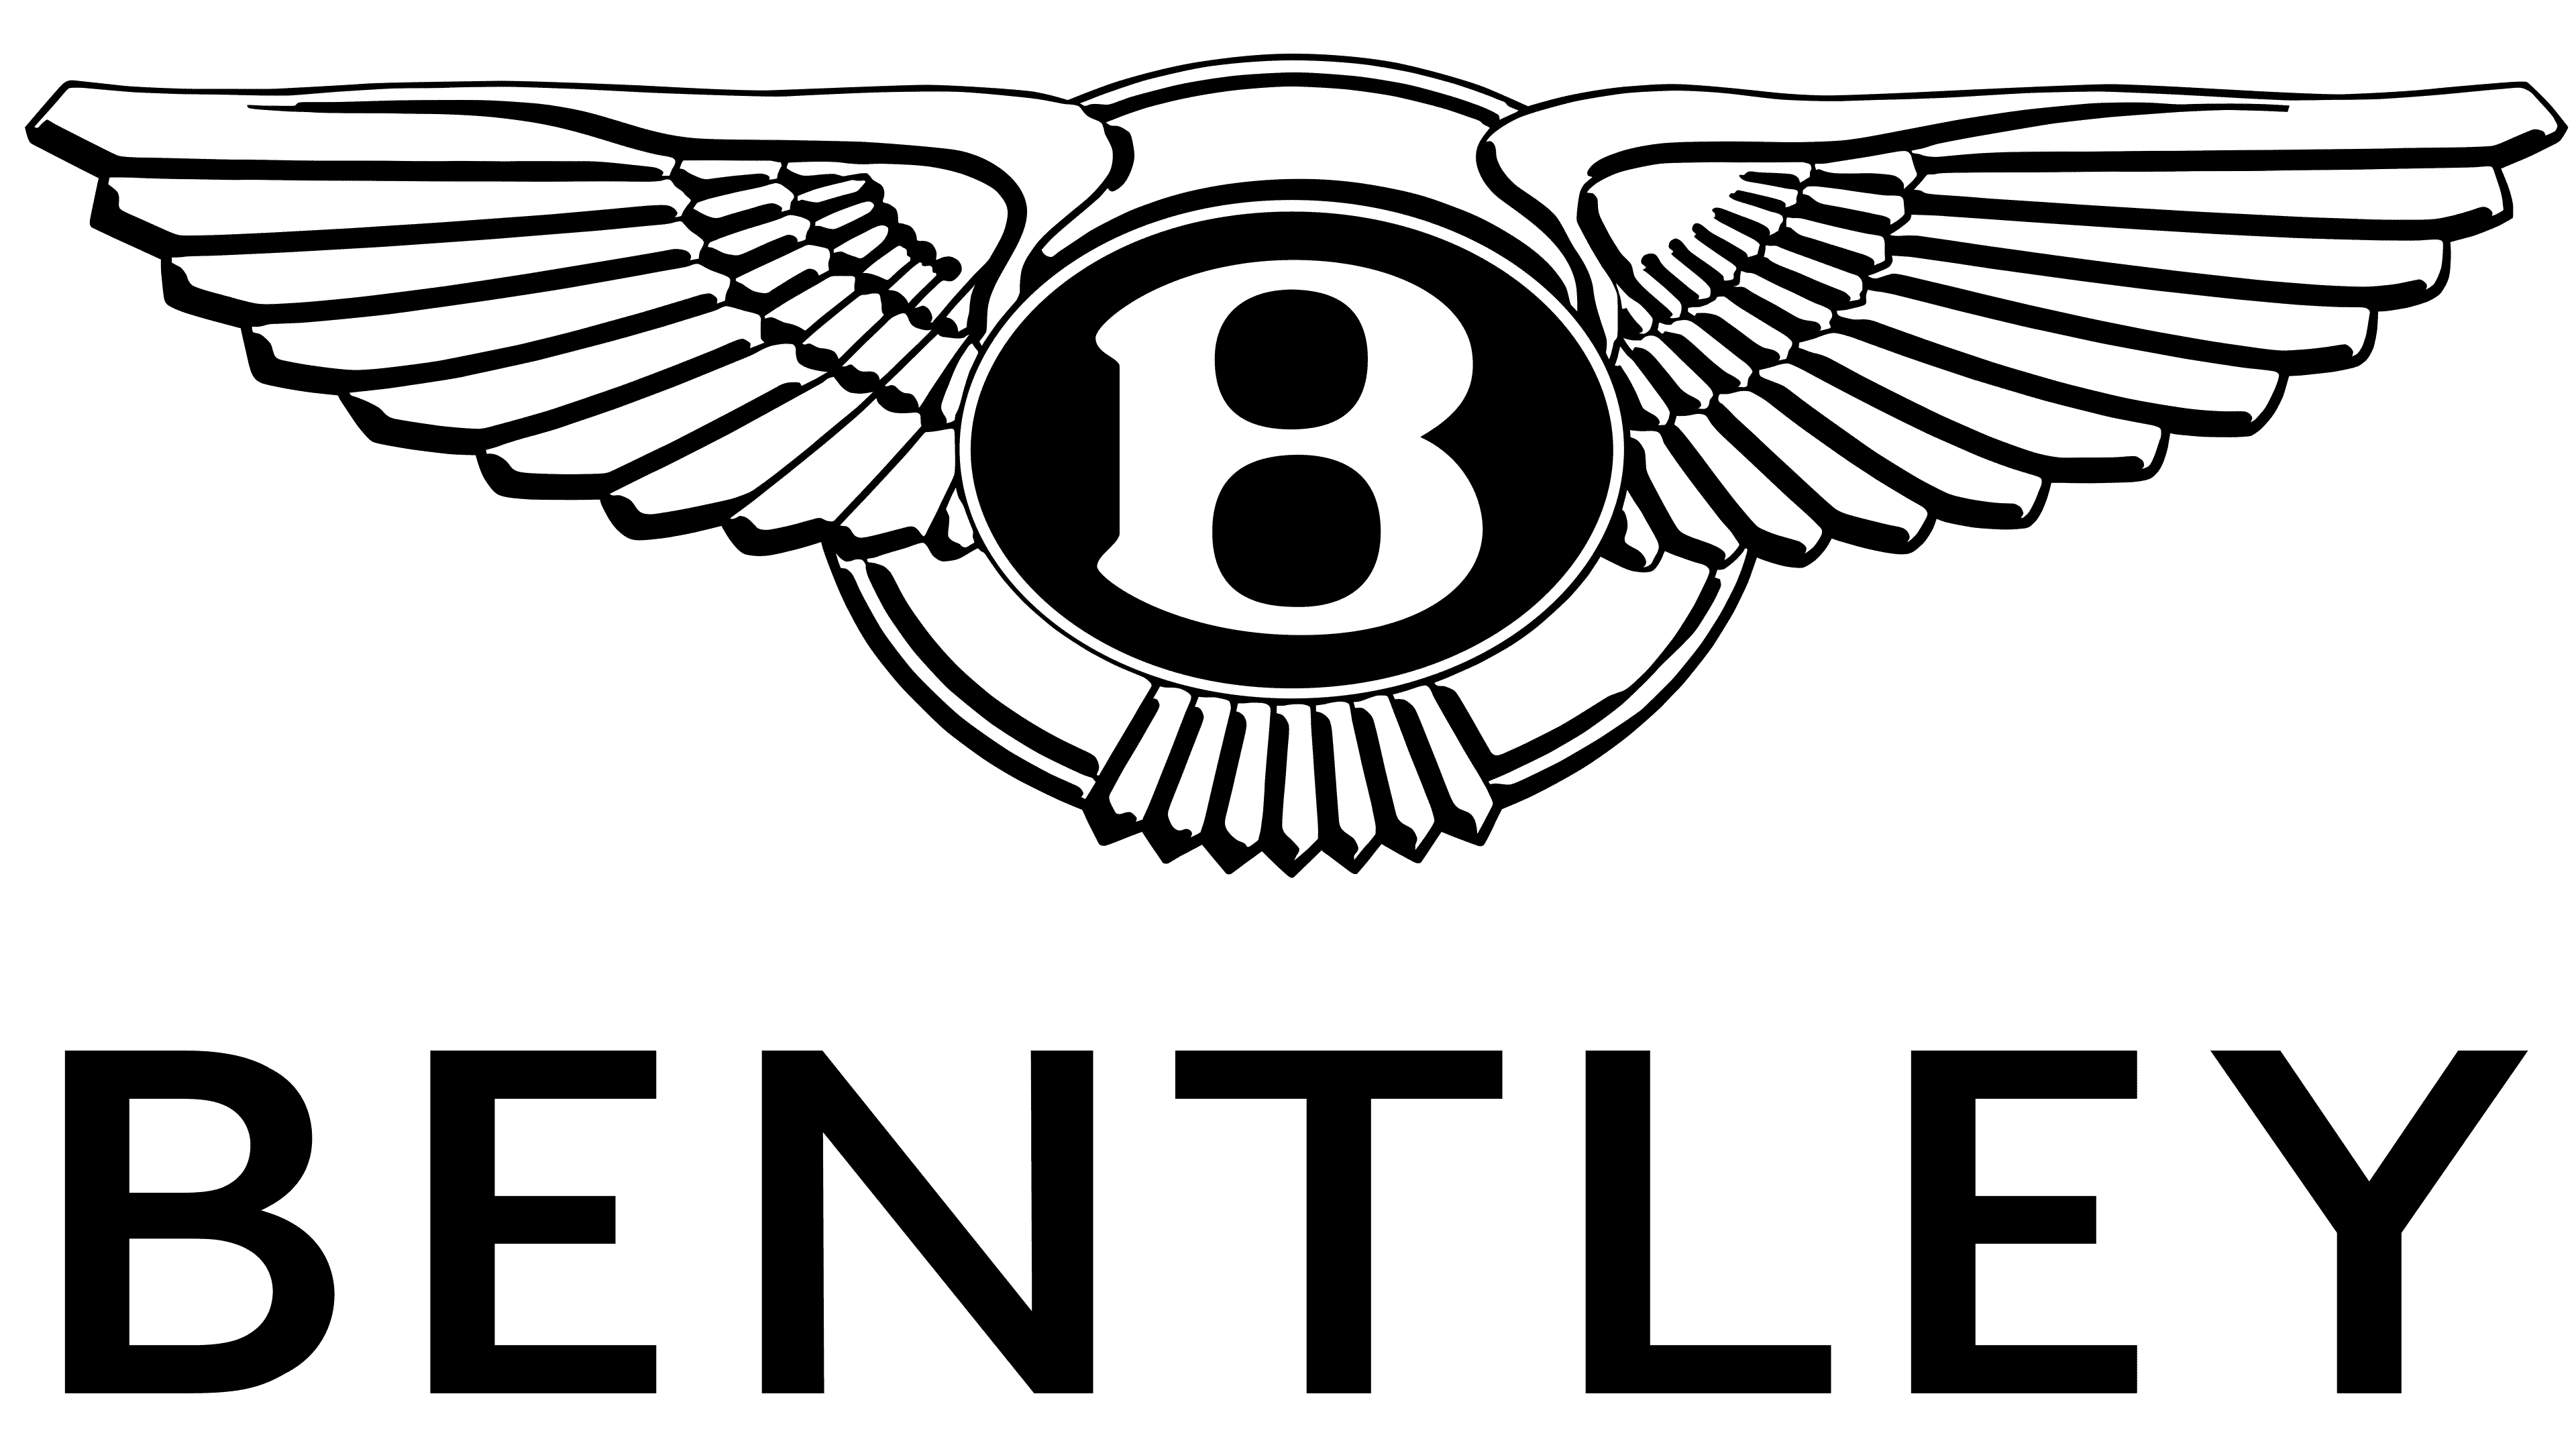 Bentley Logo histoire, signification de l'emblème